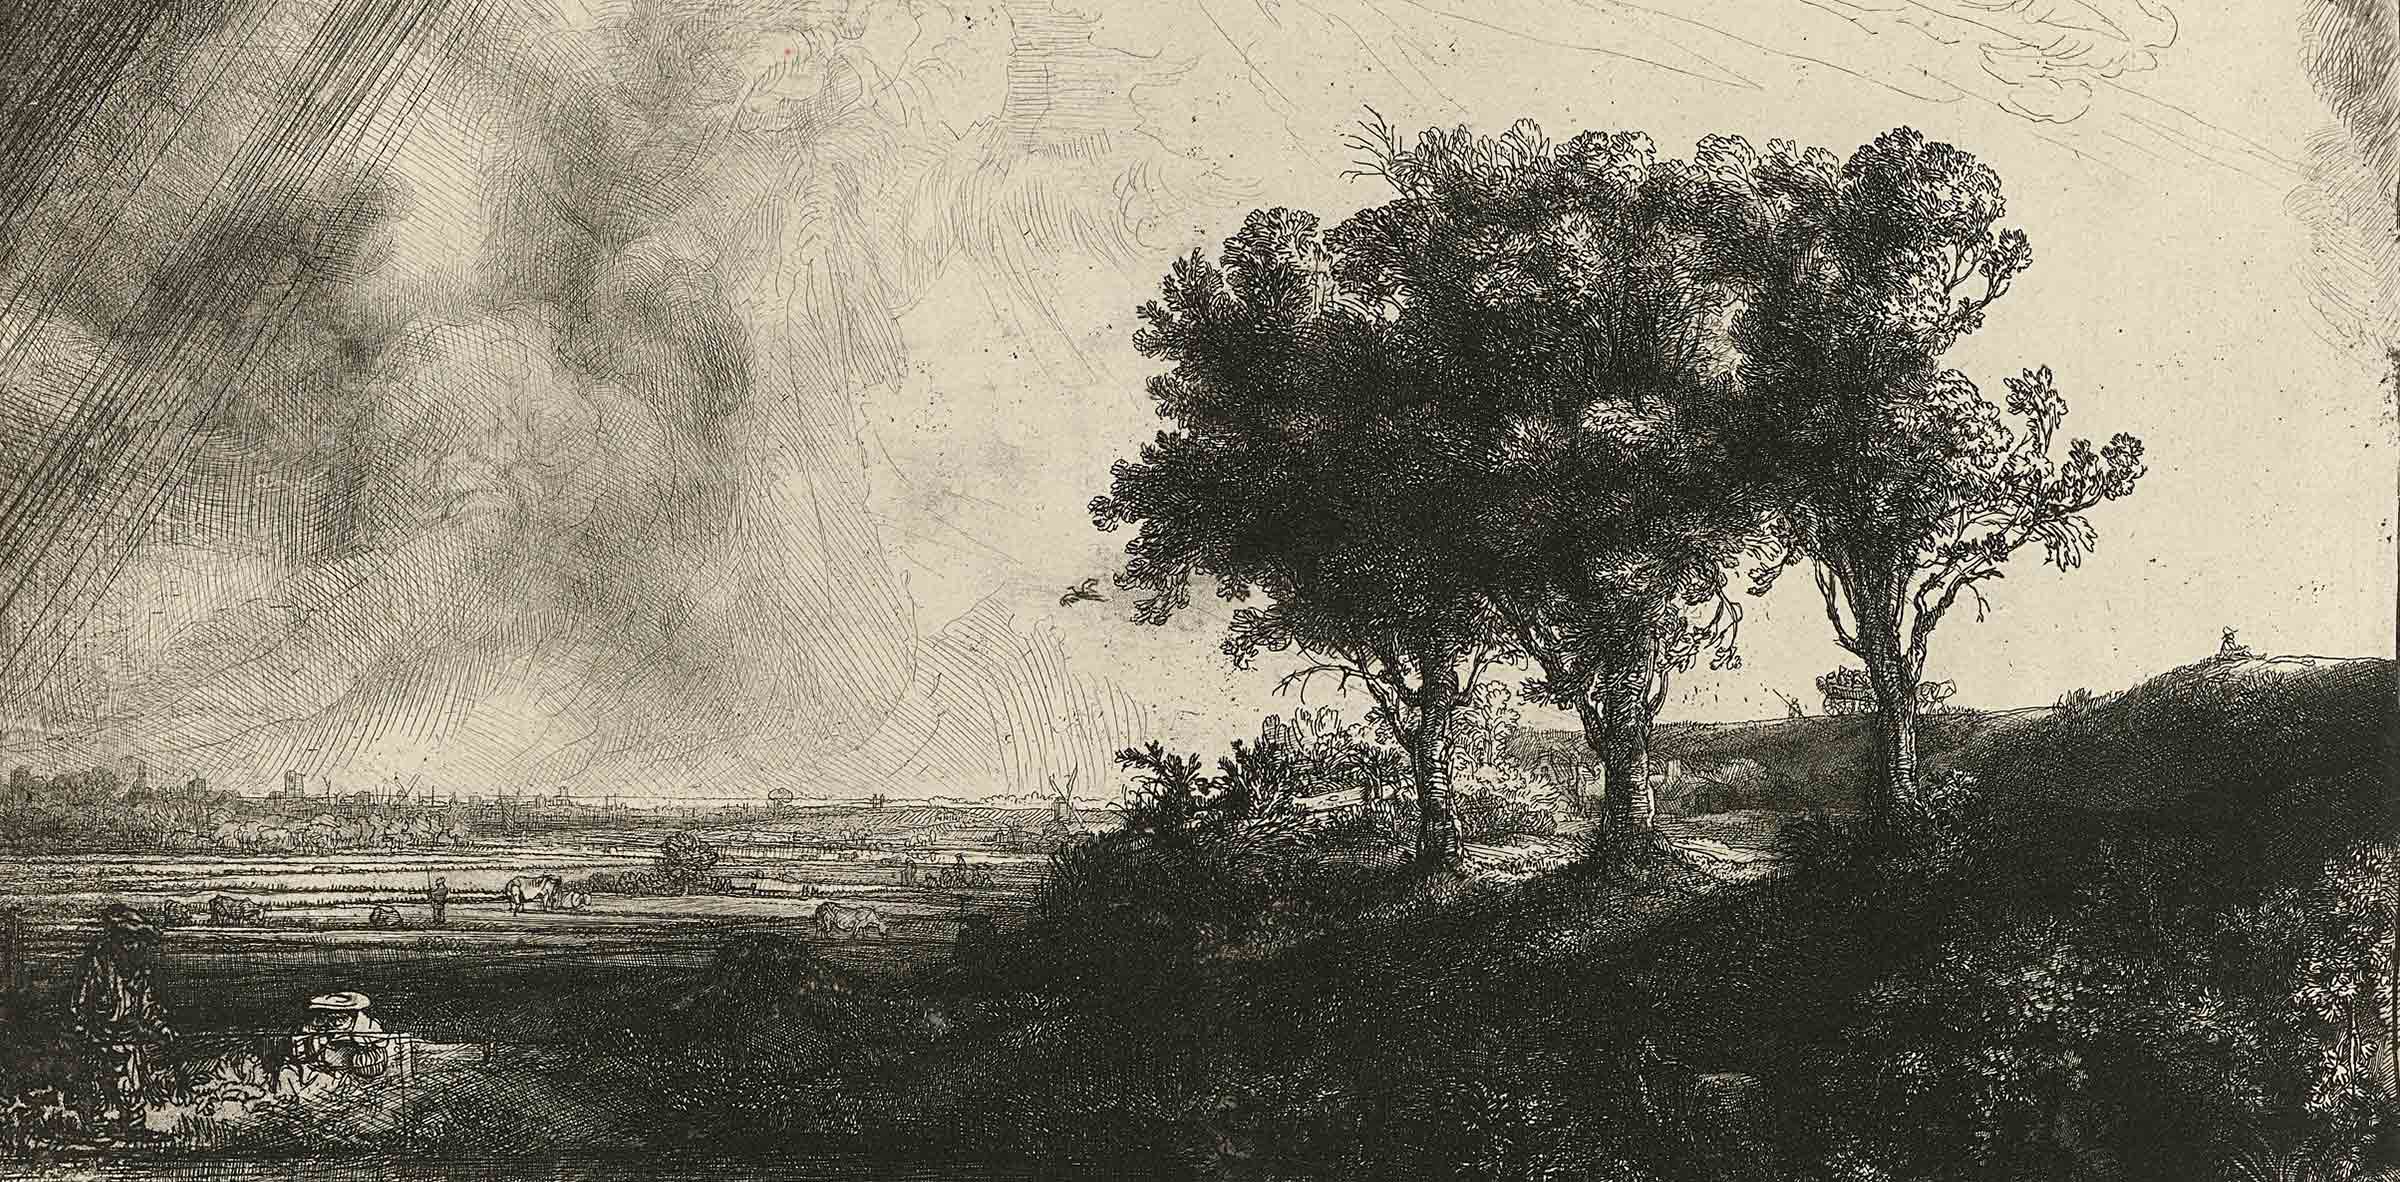 Rembrandt van Rijn, The Three Trees, 1643